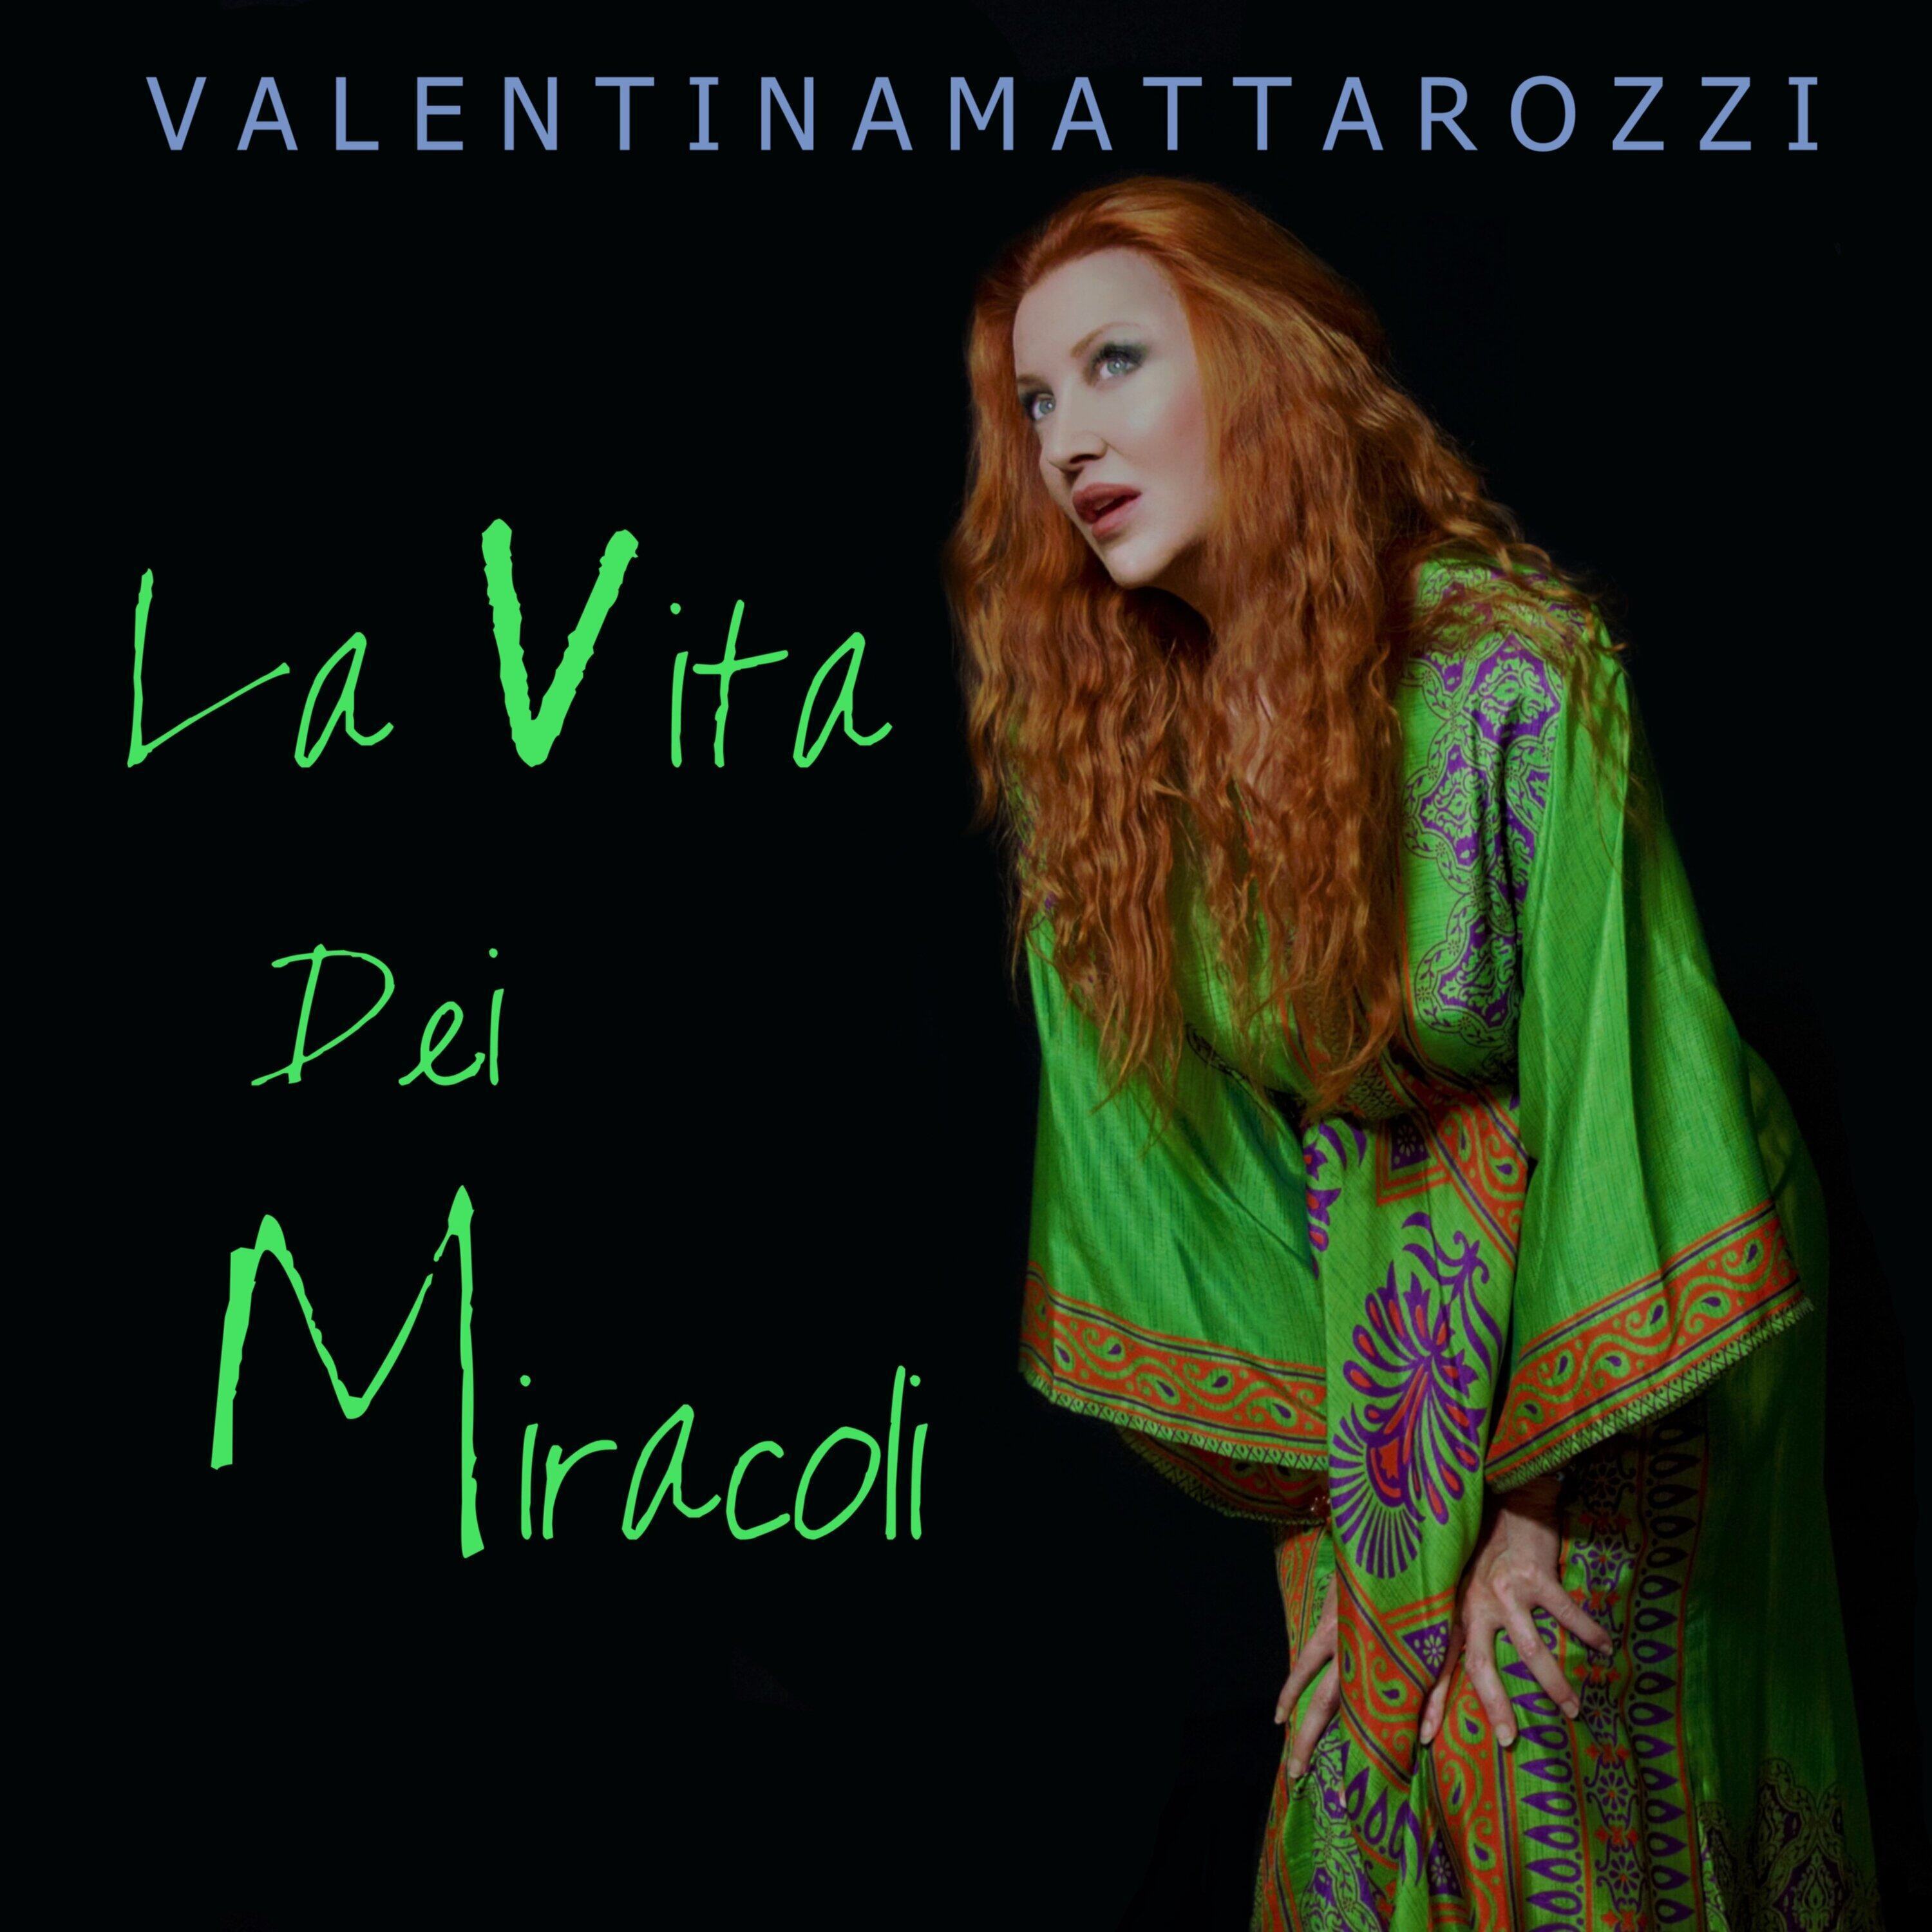 Valentina Mattarozzi:  arriva in radio  “LA VITA DEI MIRACOLI”, il nuovo singolo tratto dall’album “VIRTÙ NASCOSTE”